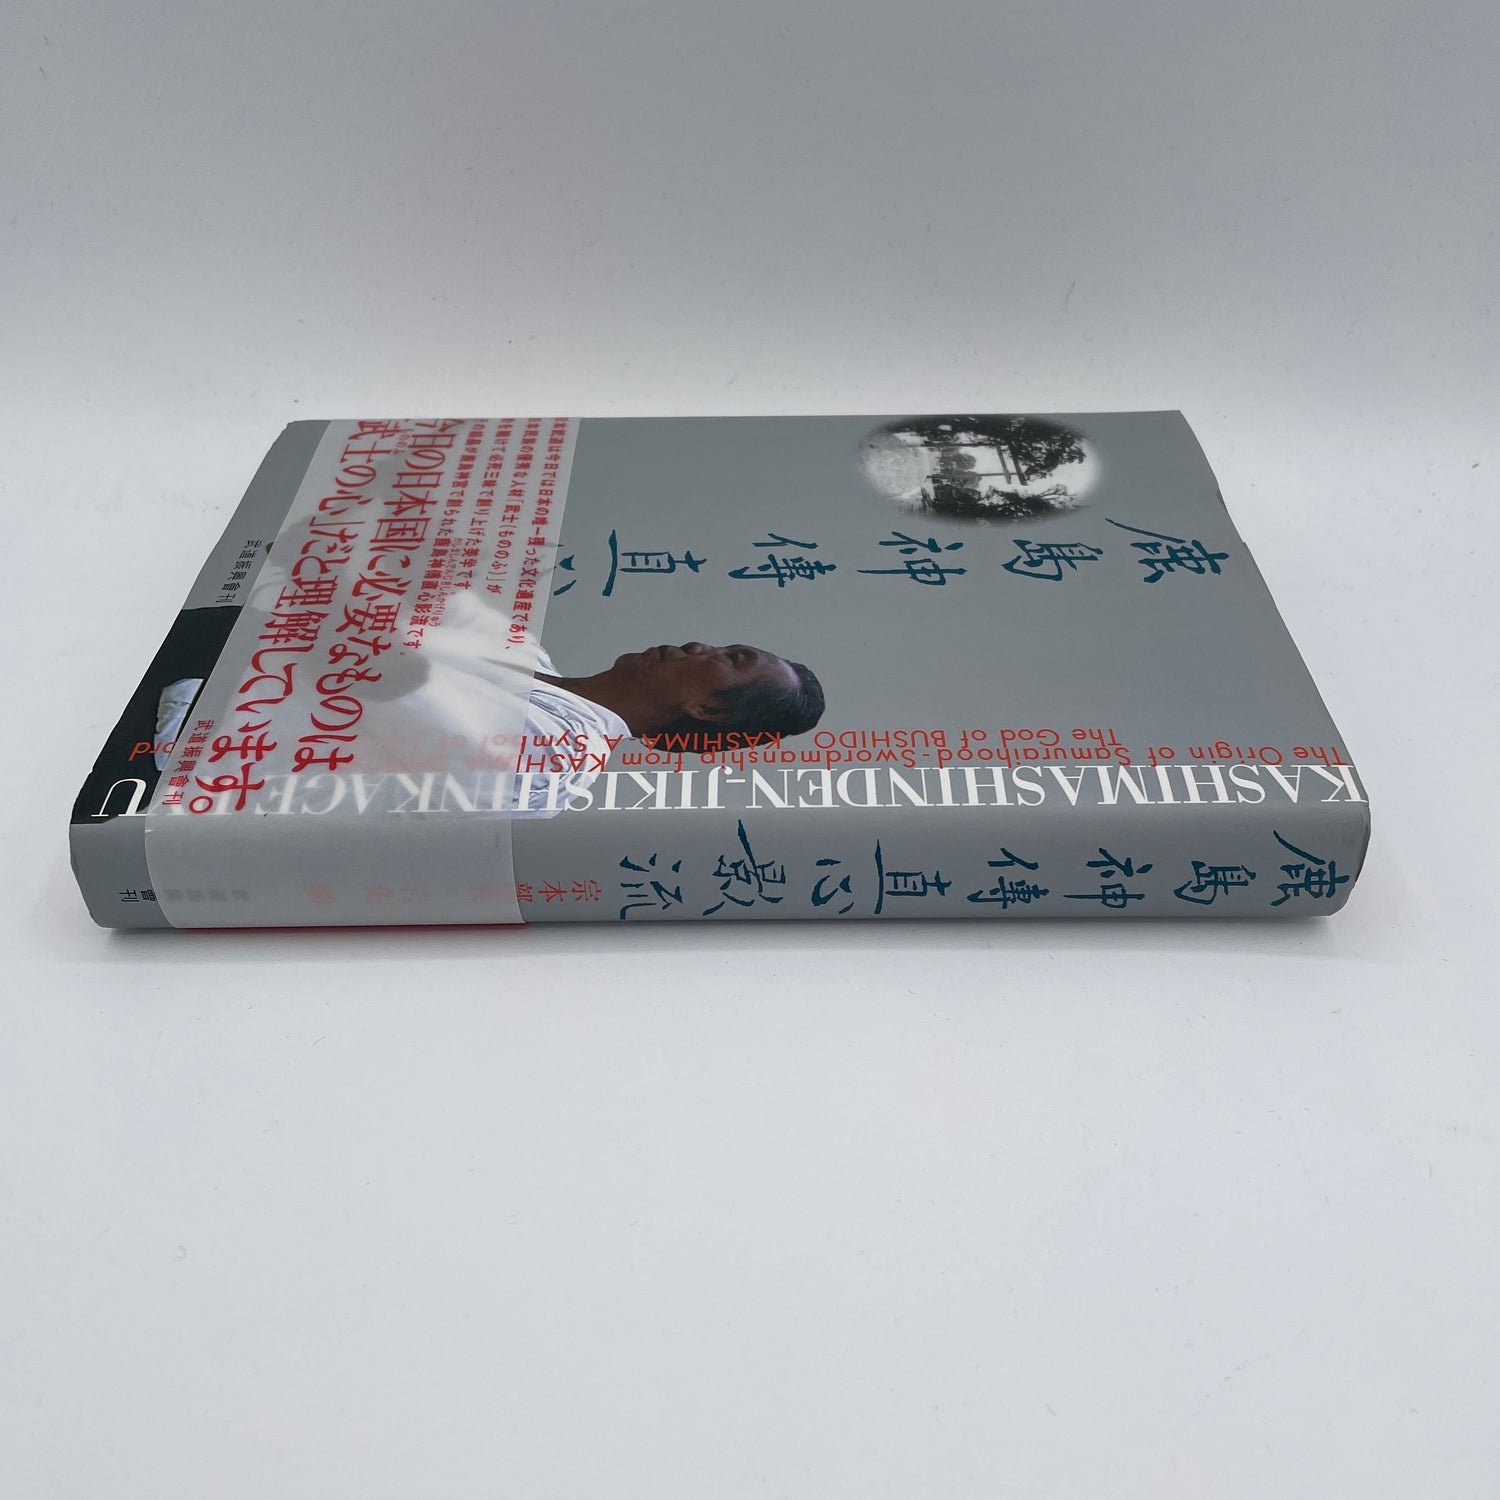 Kashima Shinden Jiki Shinkage Ryu Book by Masaru Iwasa (Hardcover)